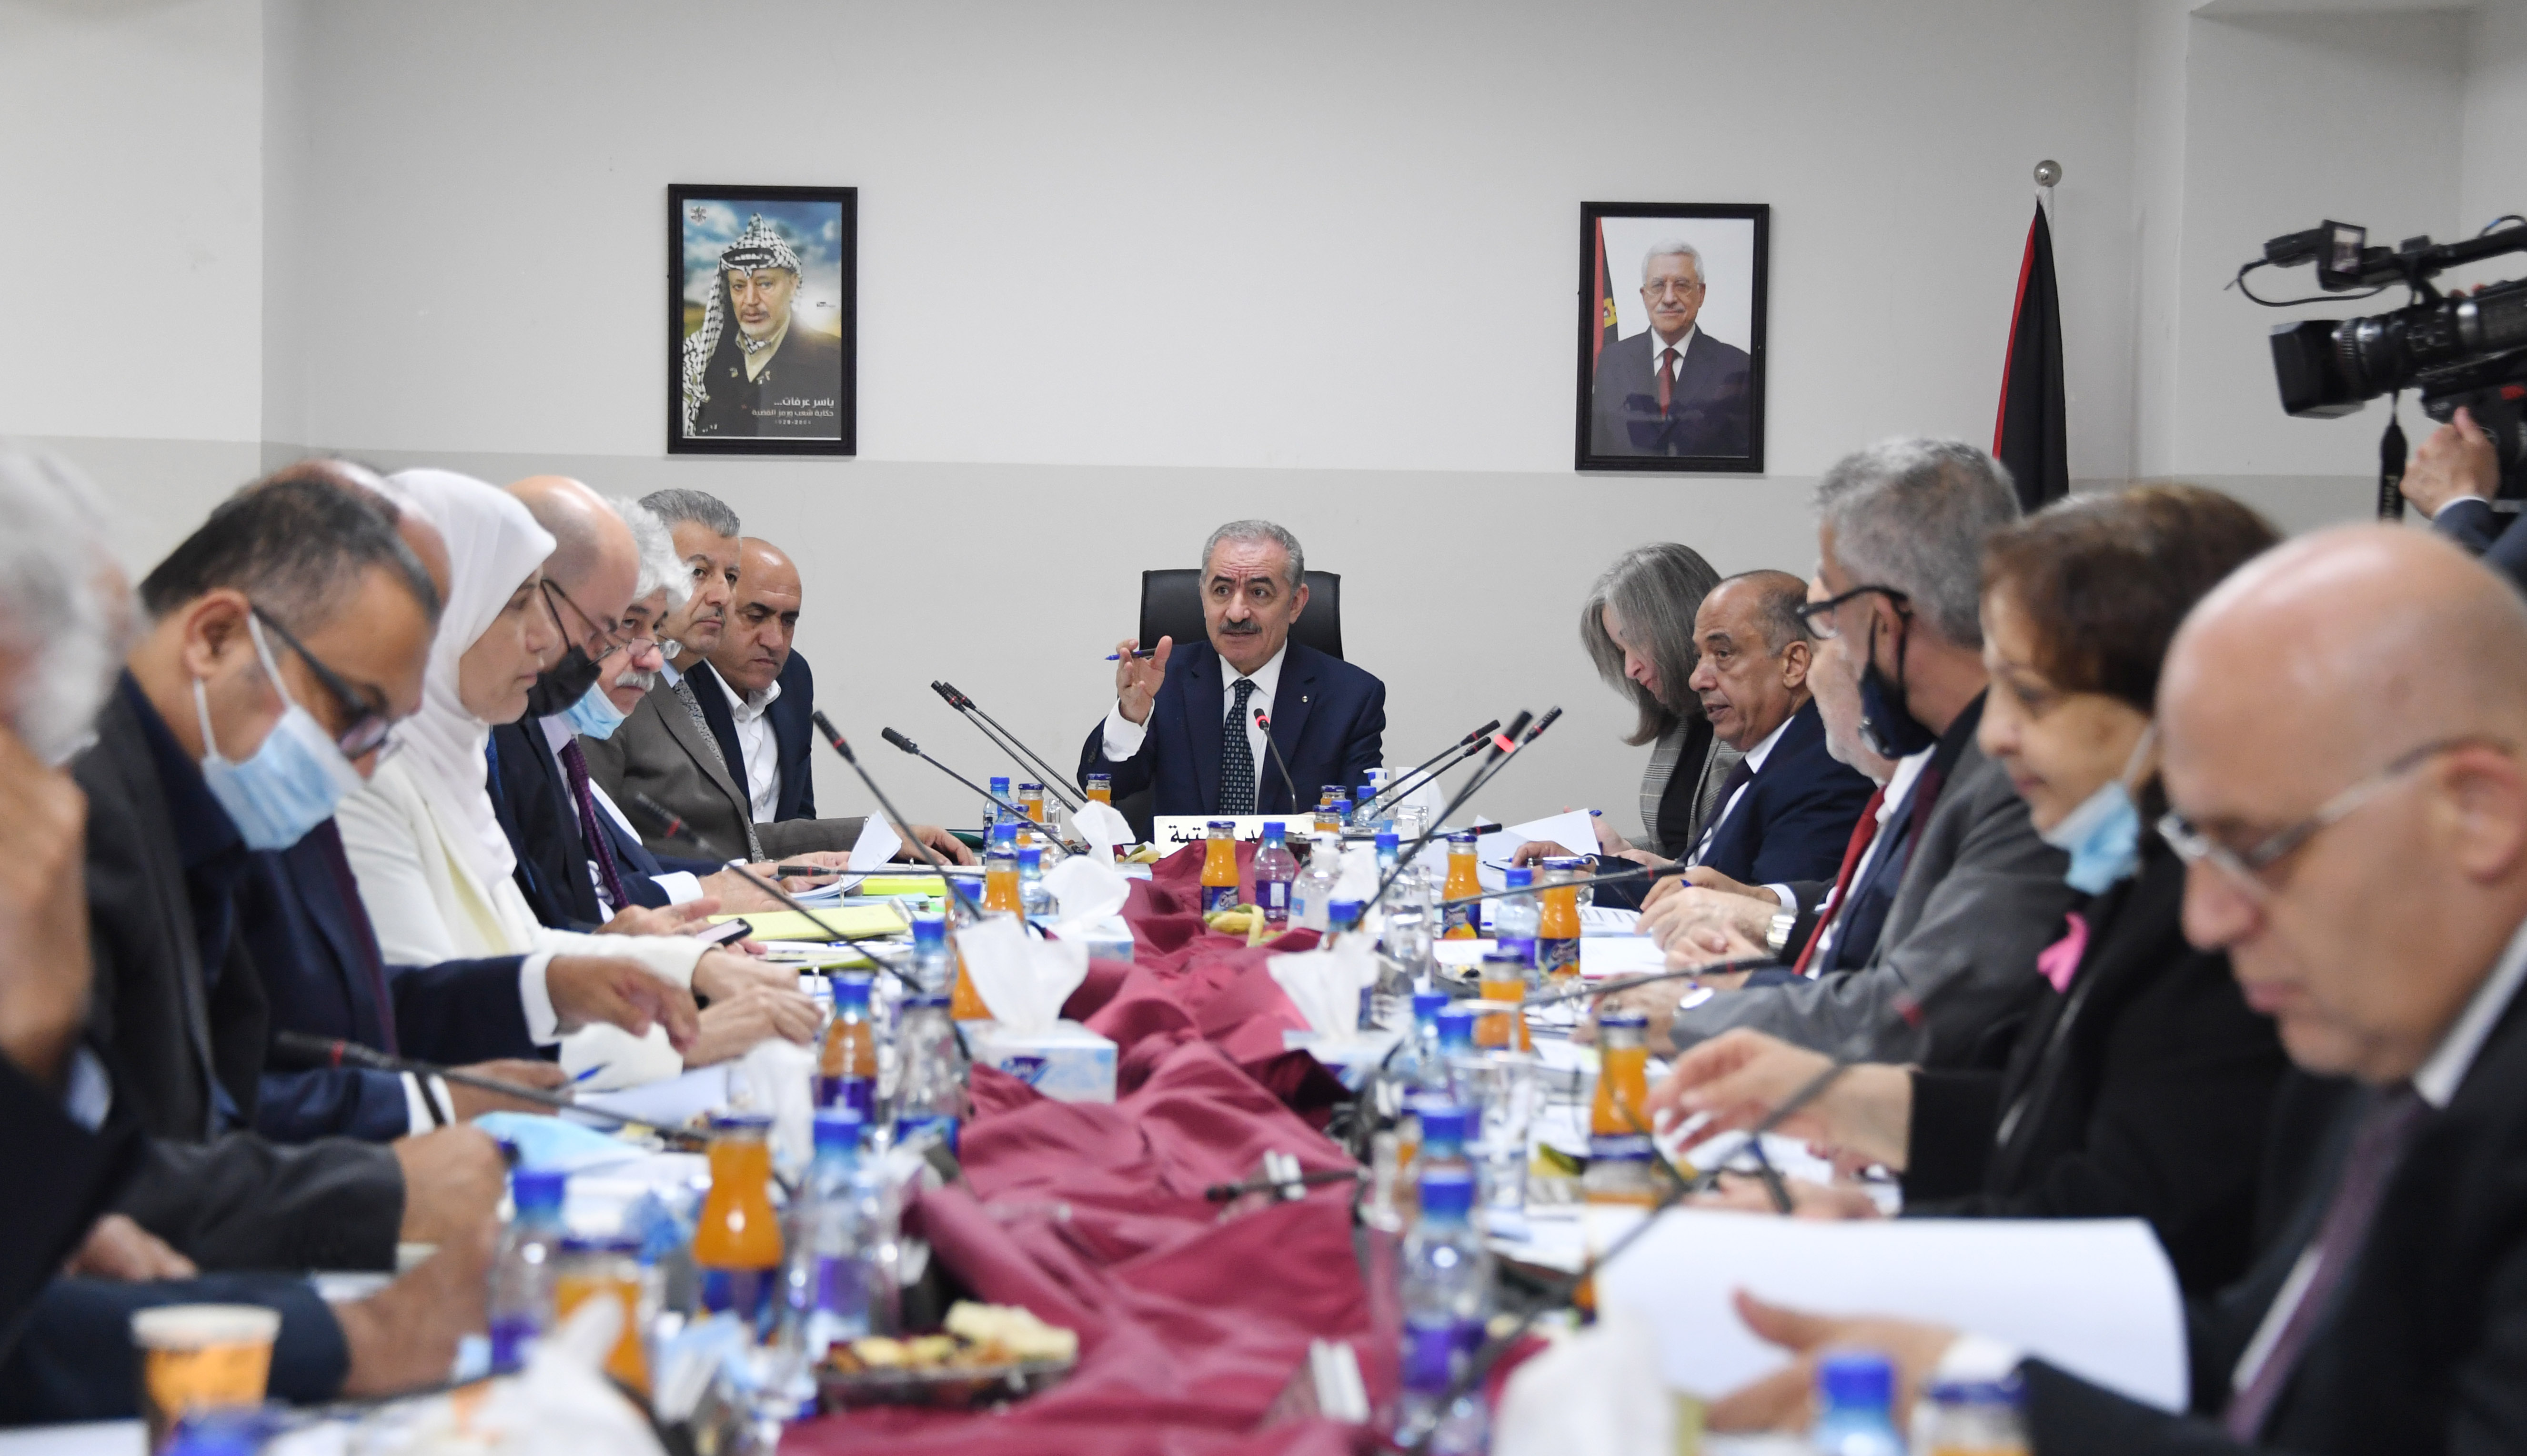 طالع قرارات مجلس الوزراء الفلسطيني خلال جلسته اليوم الإثنين في مدينة جنين 